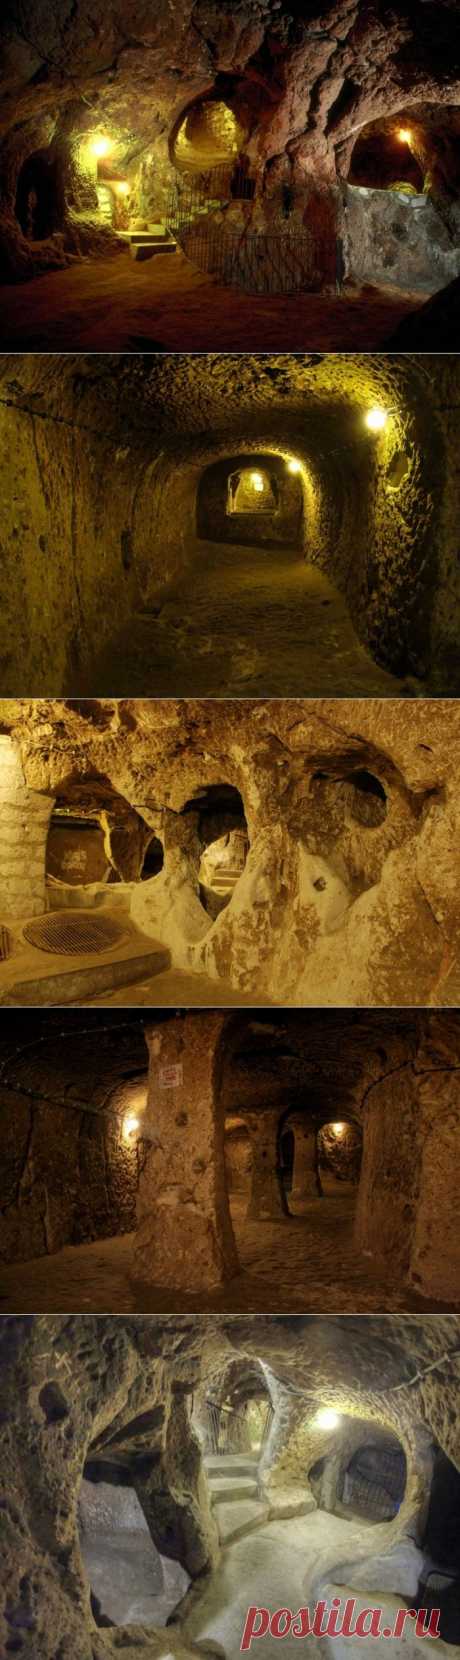 Мужчина ремонтировал дом и обнаружил целый подземный город (+Фото)